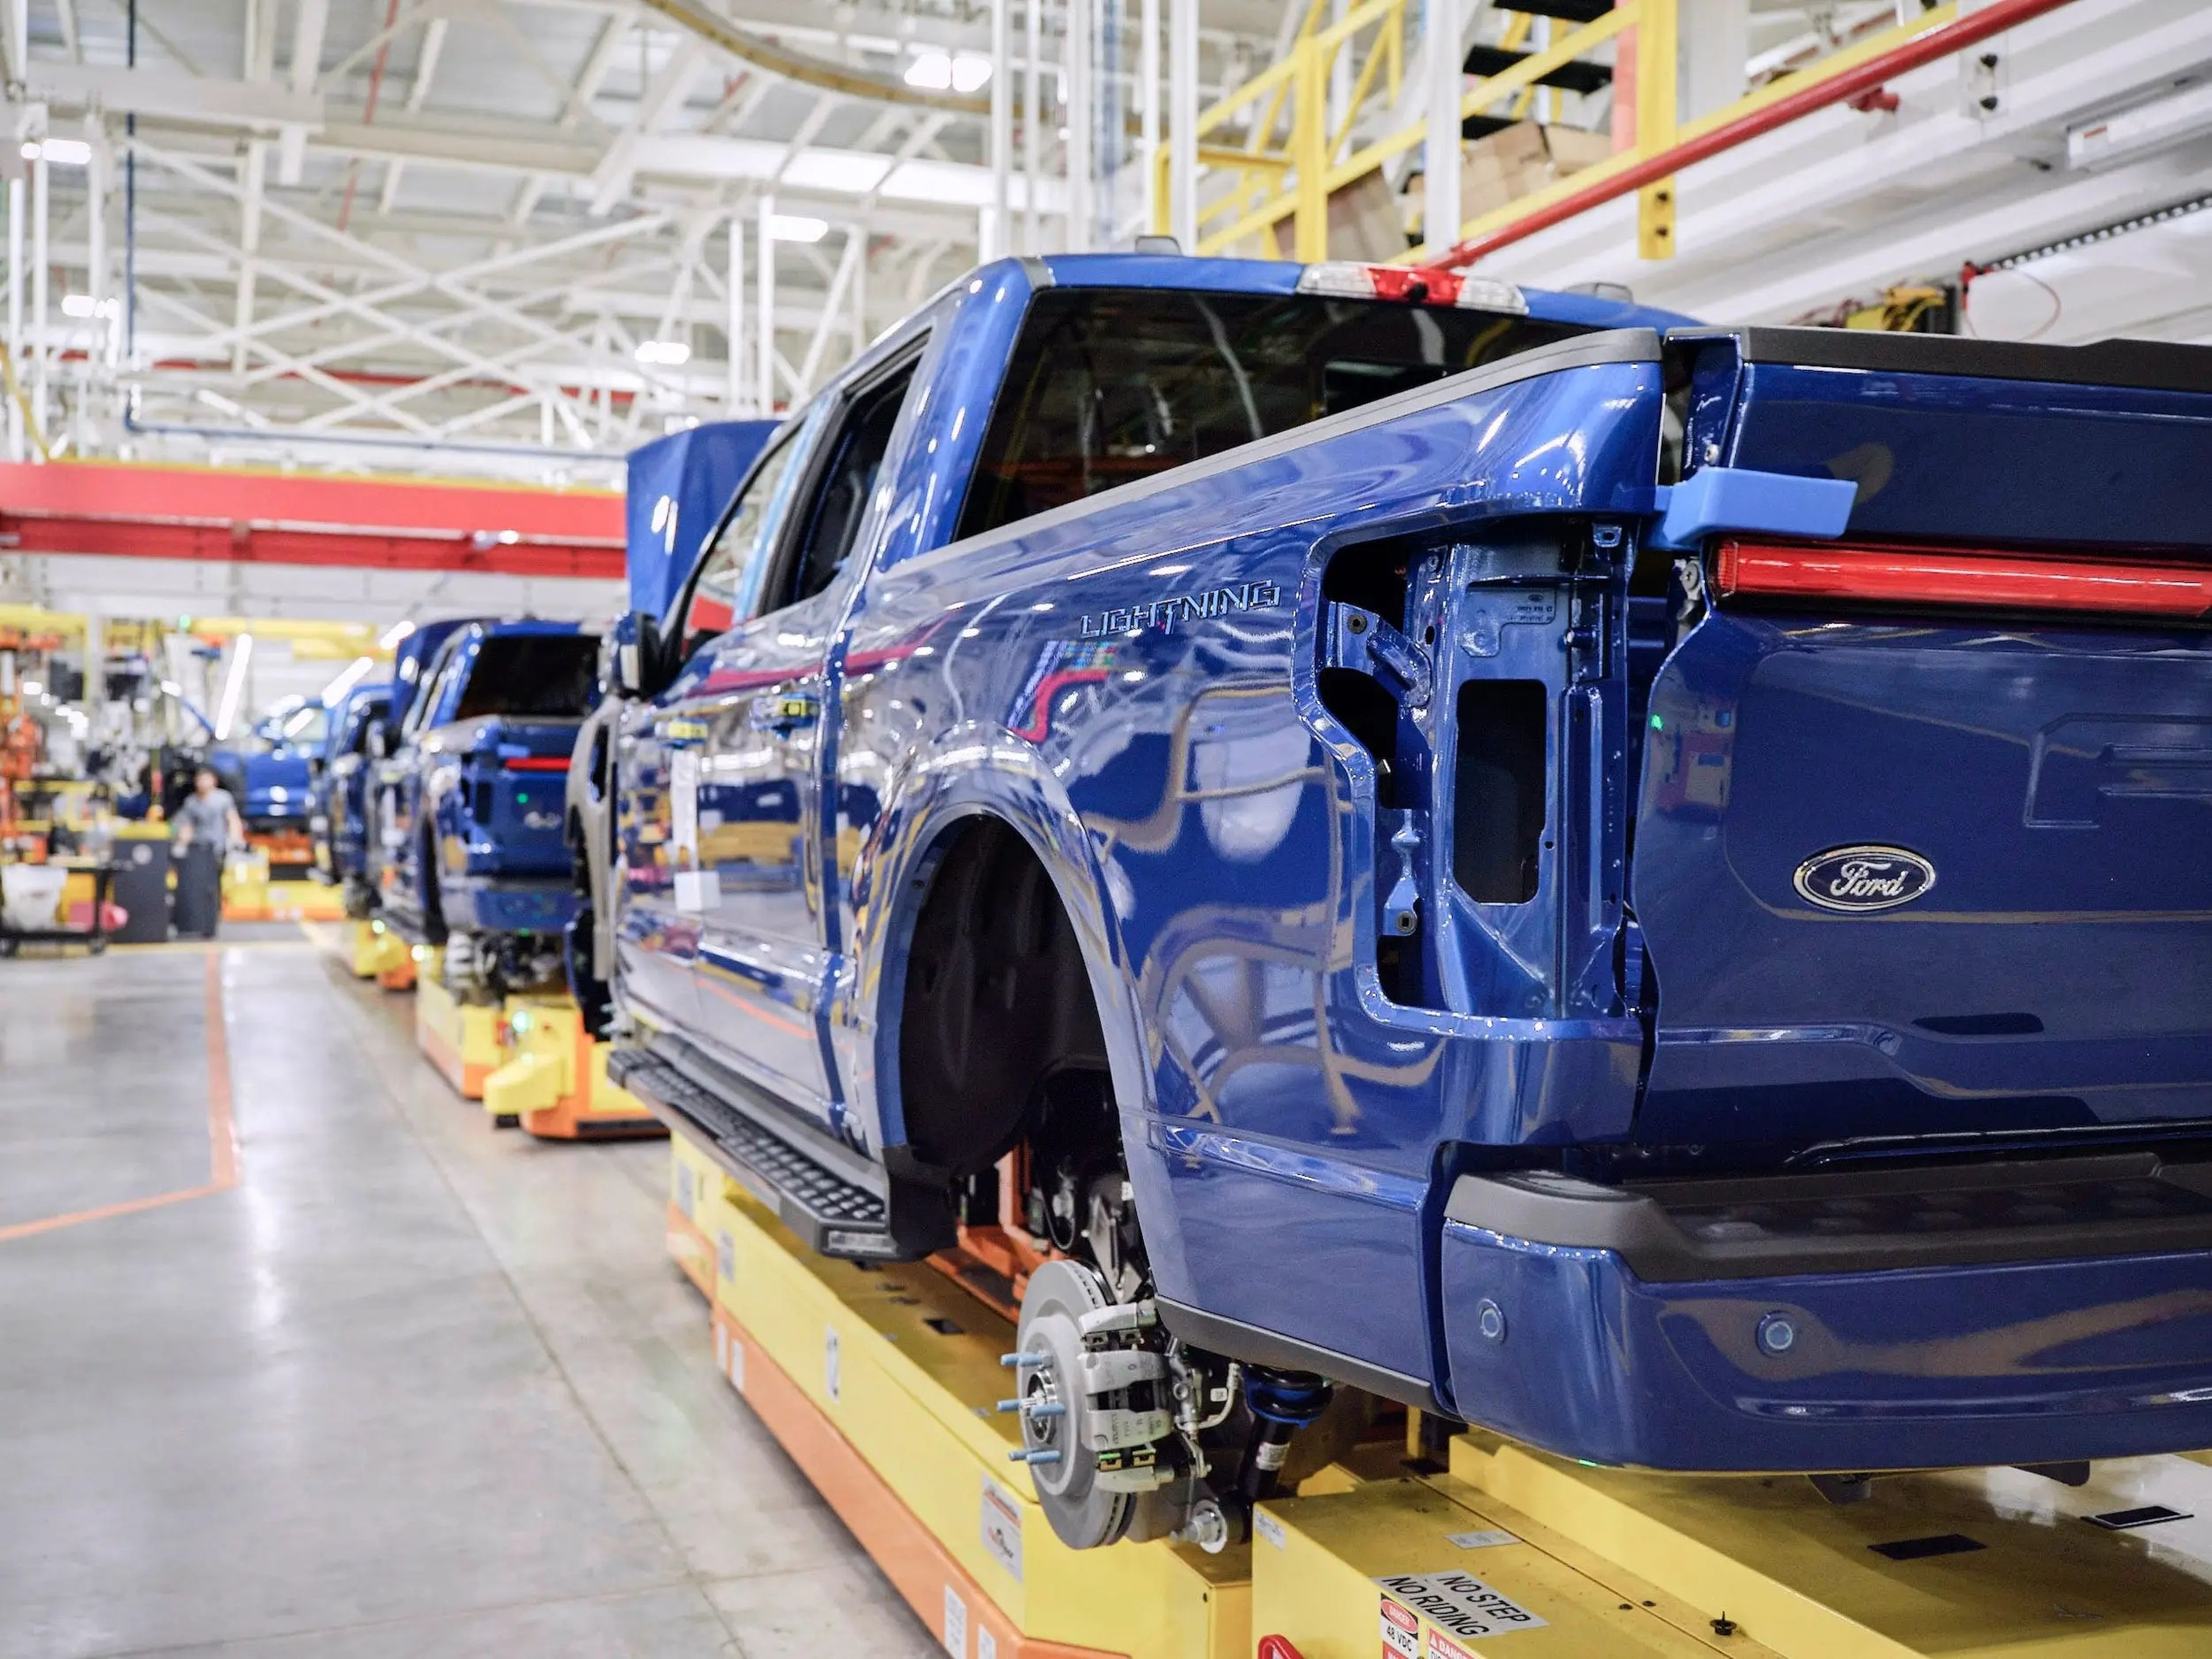 Compañías como Ford prevén que en los próximos años, haya millones de coches eléctricos. Pero la oferta de baterías de la industria dice otra cosa.